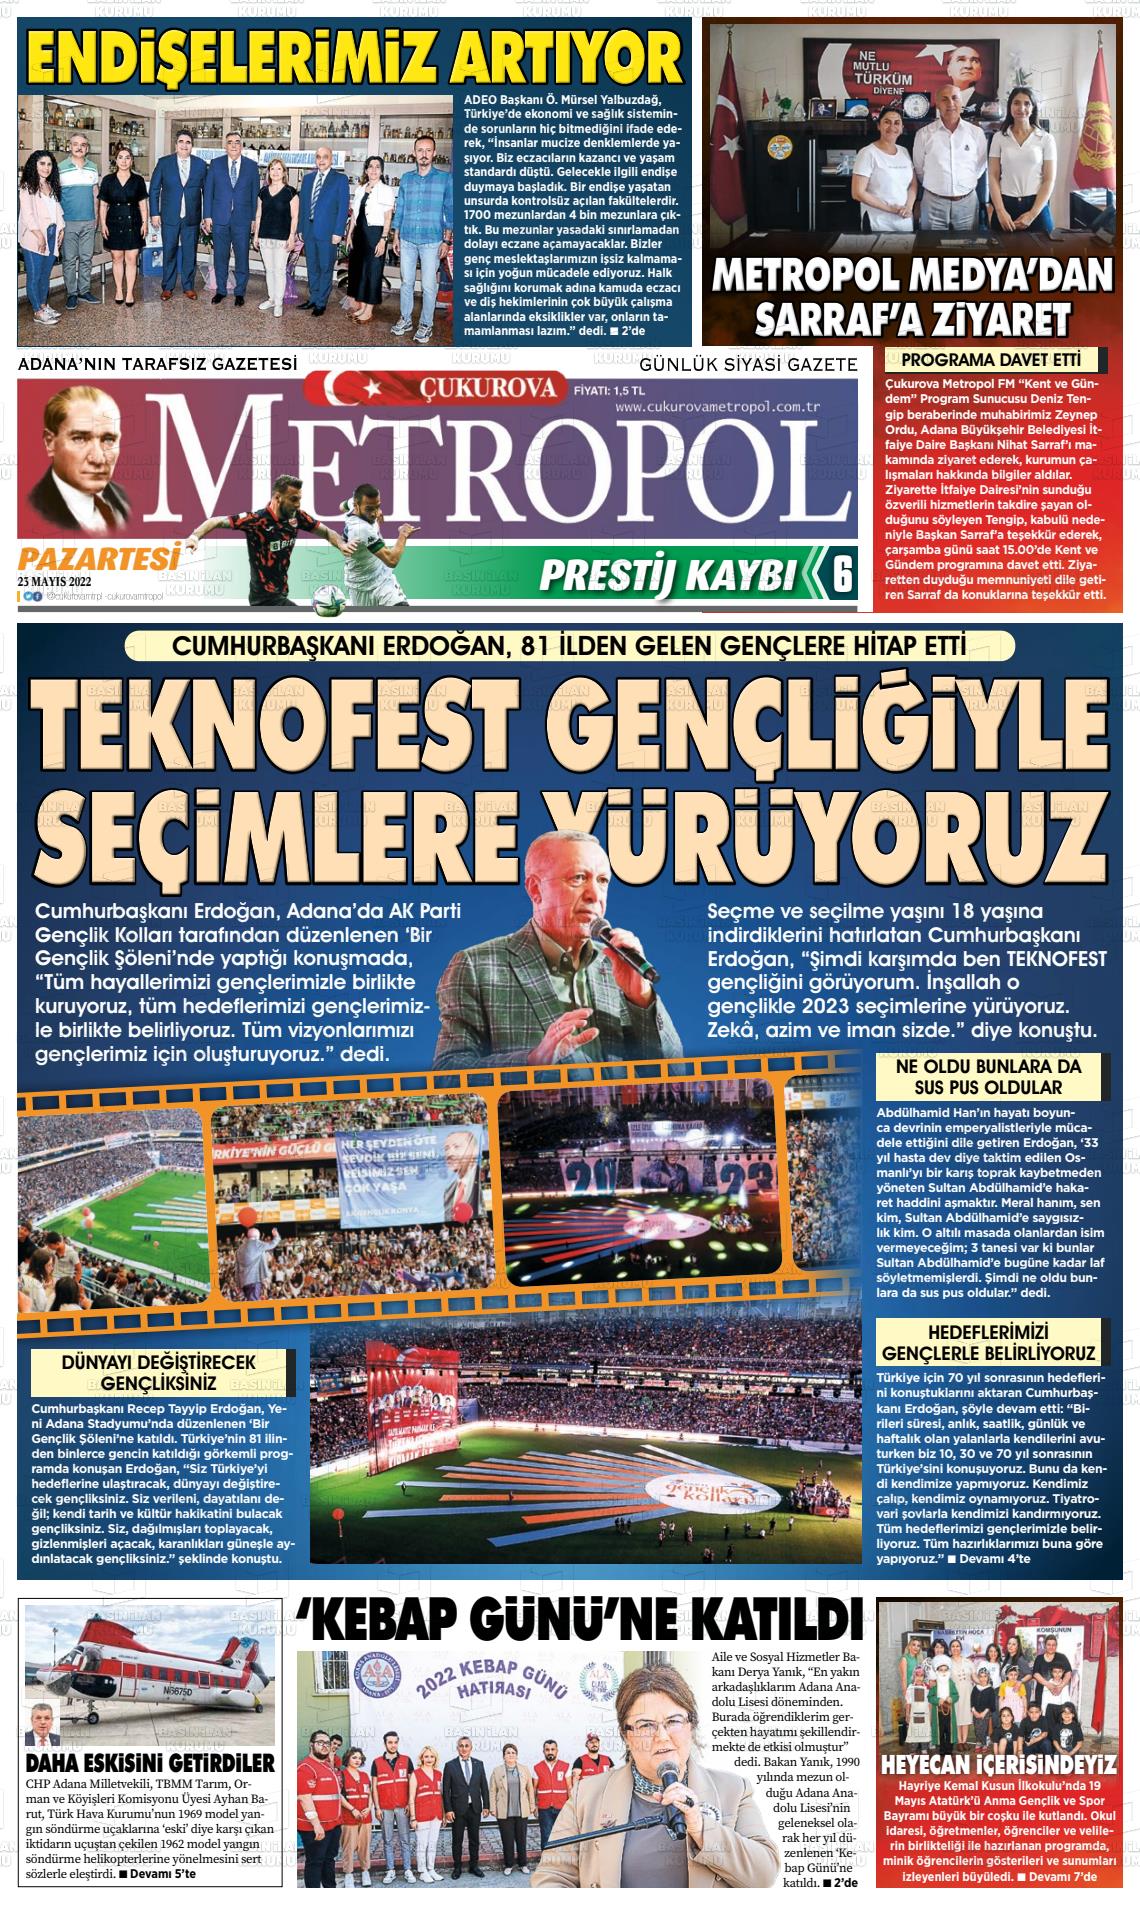 23 Mayıs 2022 Çukurova Metropol Gazete Manşeti